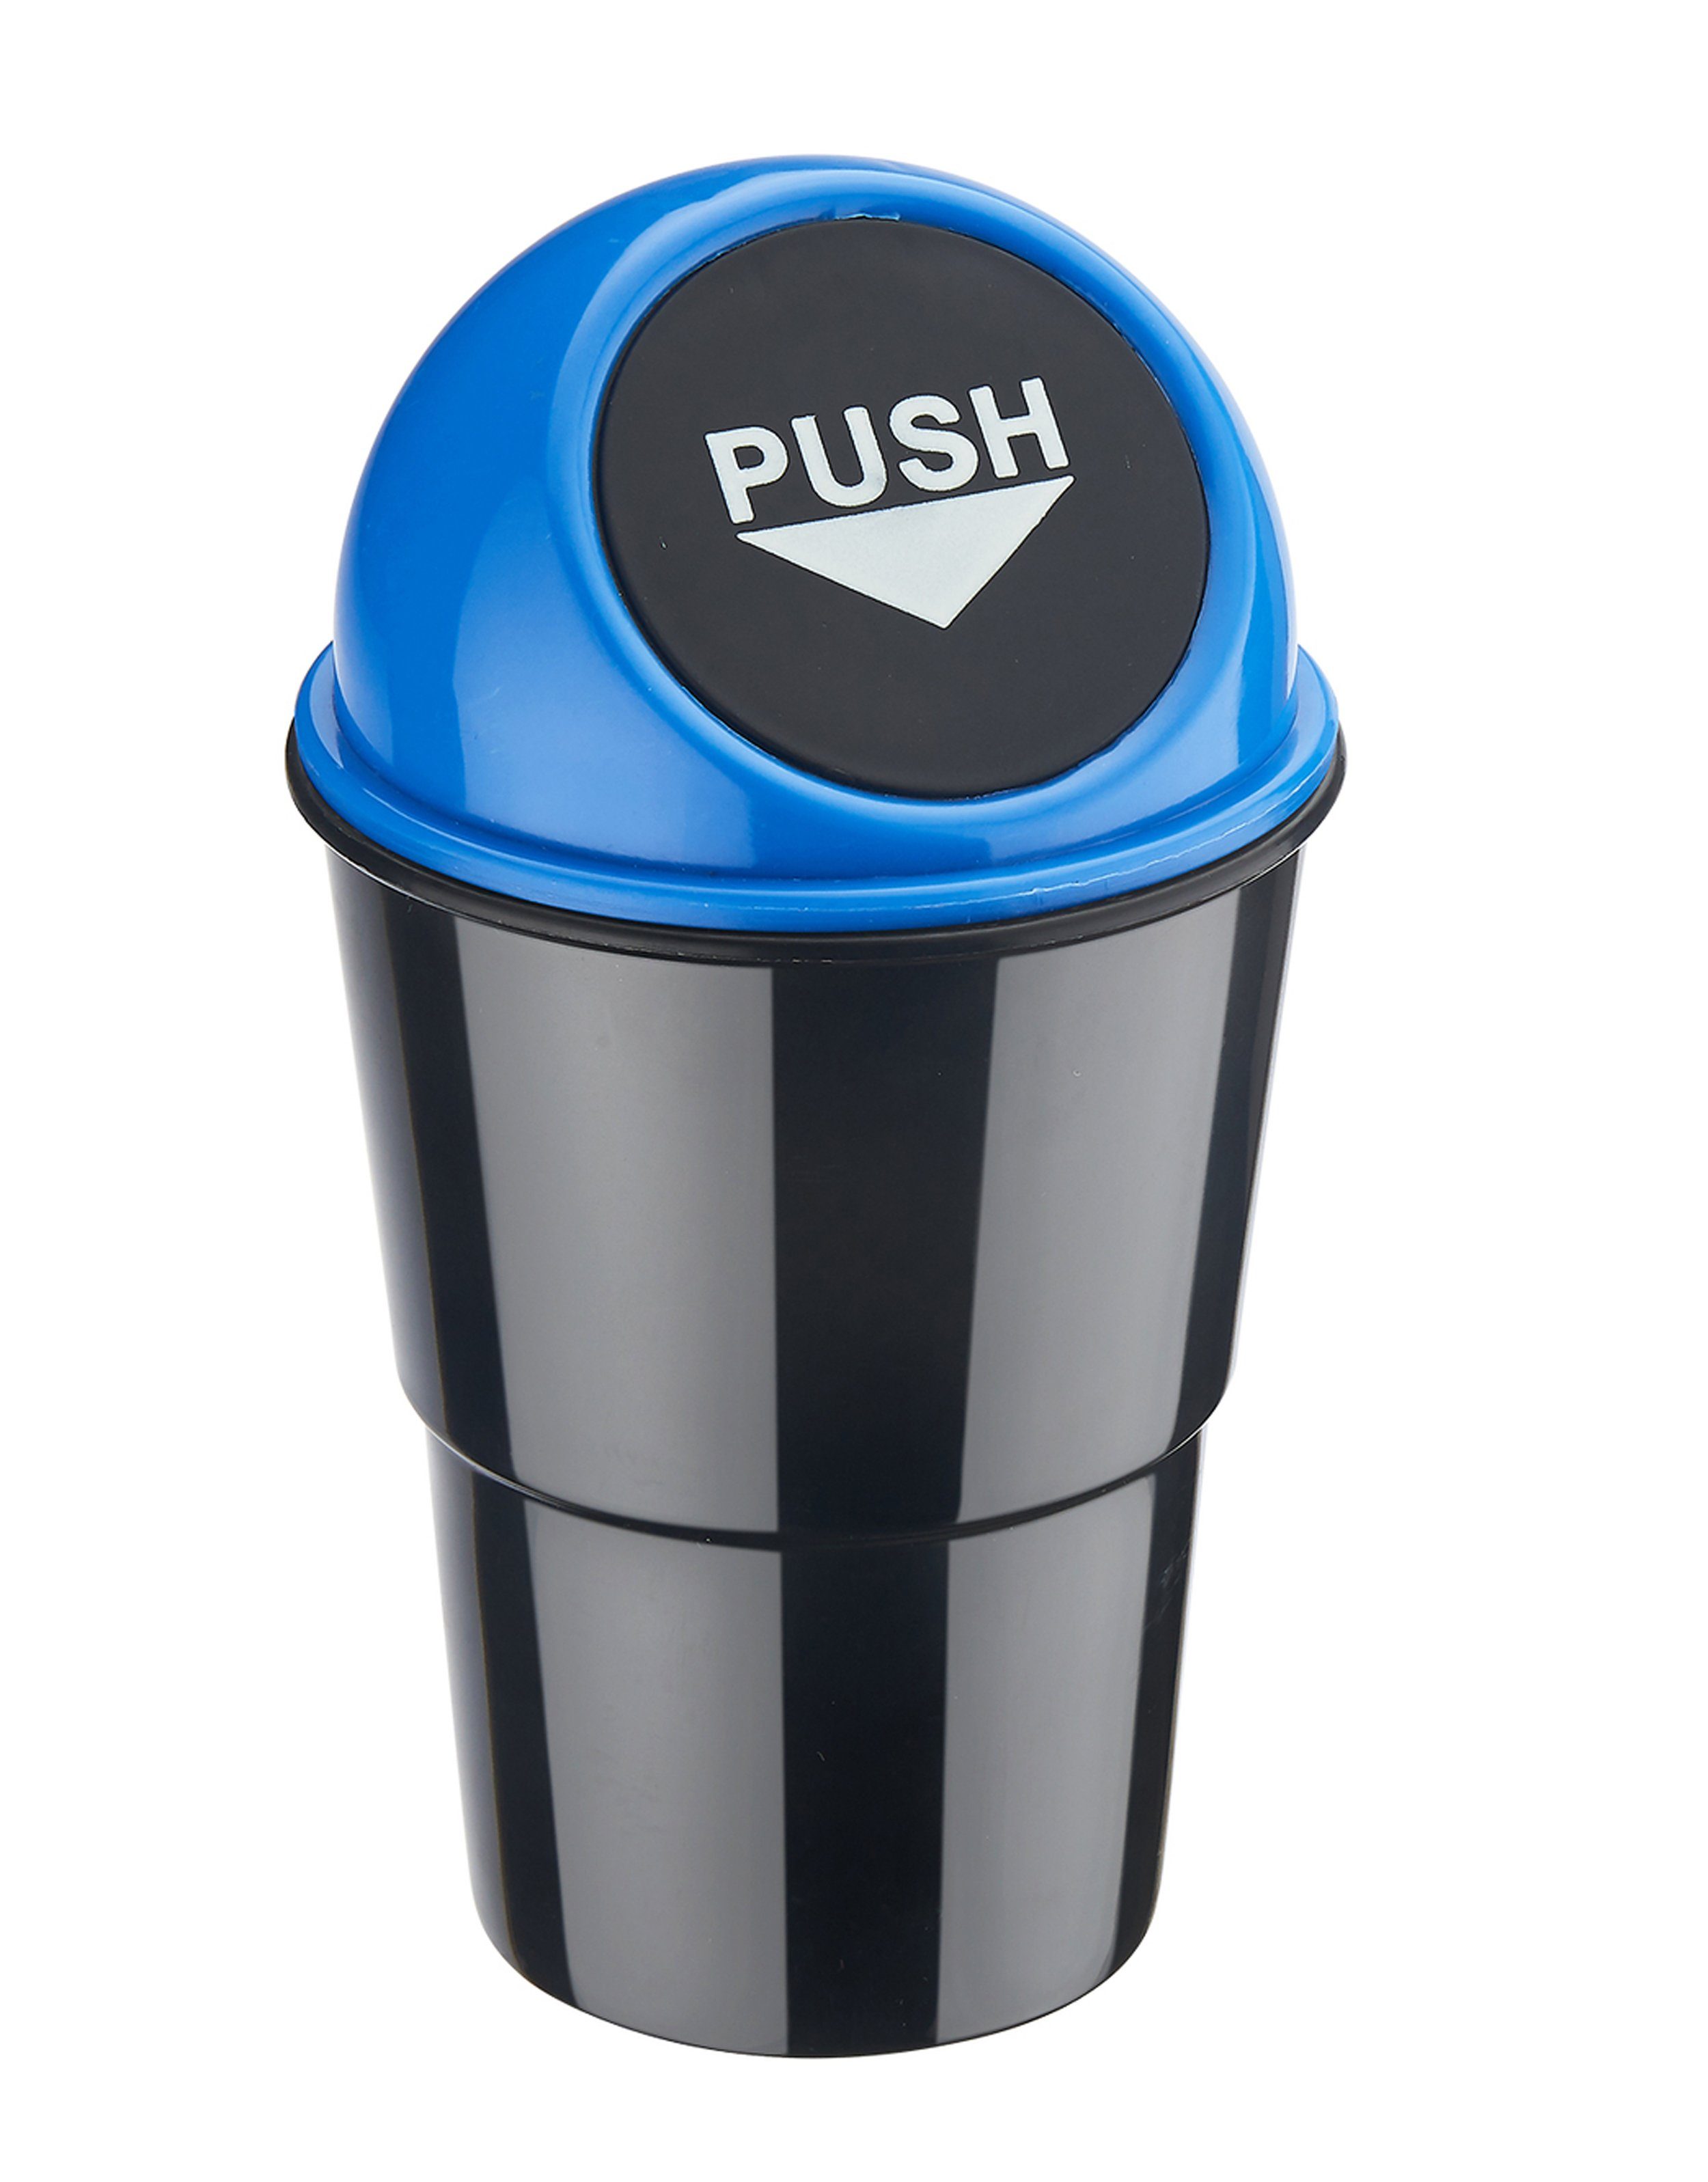 CHAMP Mülleimer Mini MÜLLEIMER für Auto mit Push-Deckel Getränkehalterung Automülleimer PKW KFZ Abfalleimer 1 (Blau)